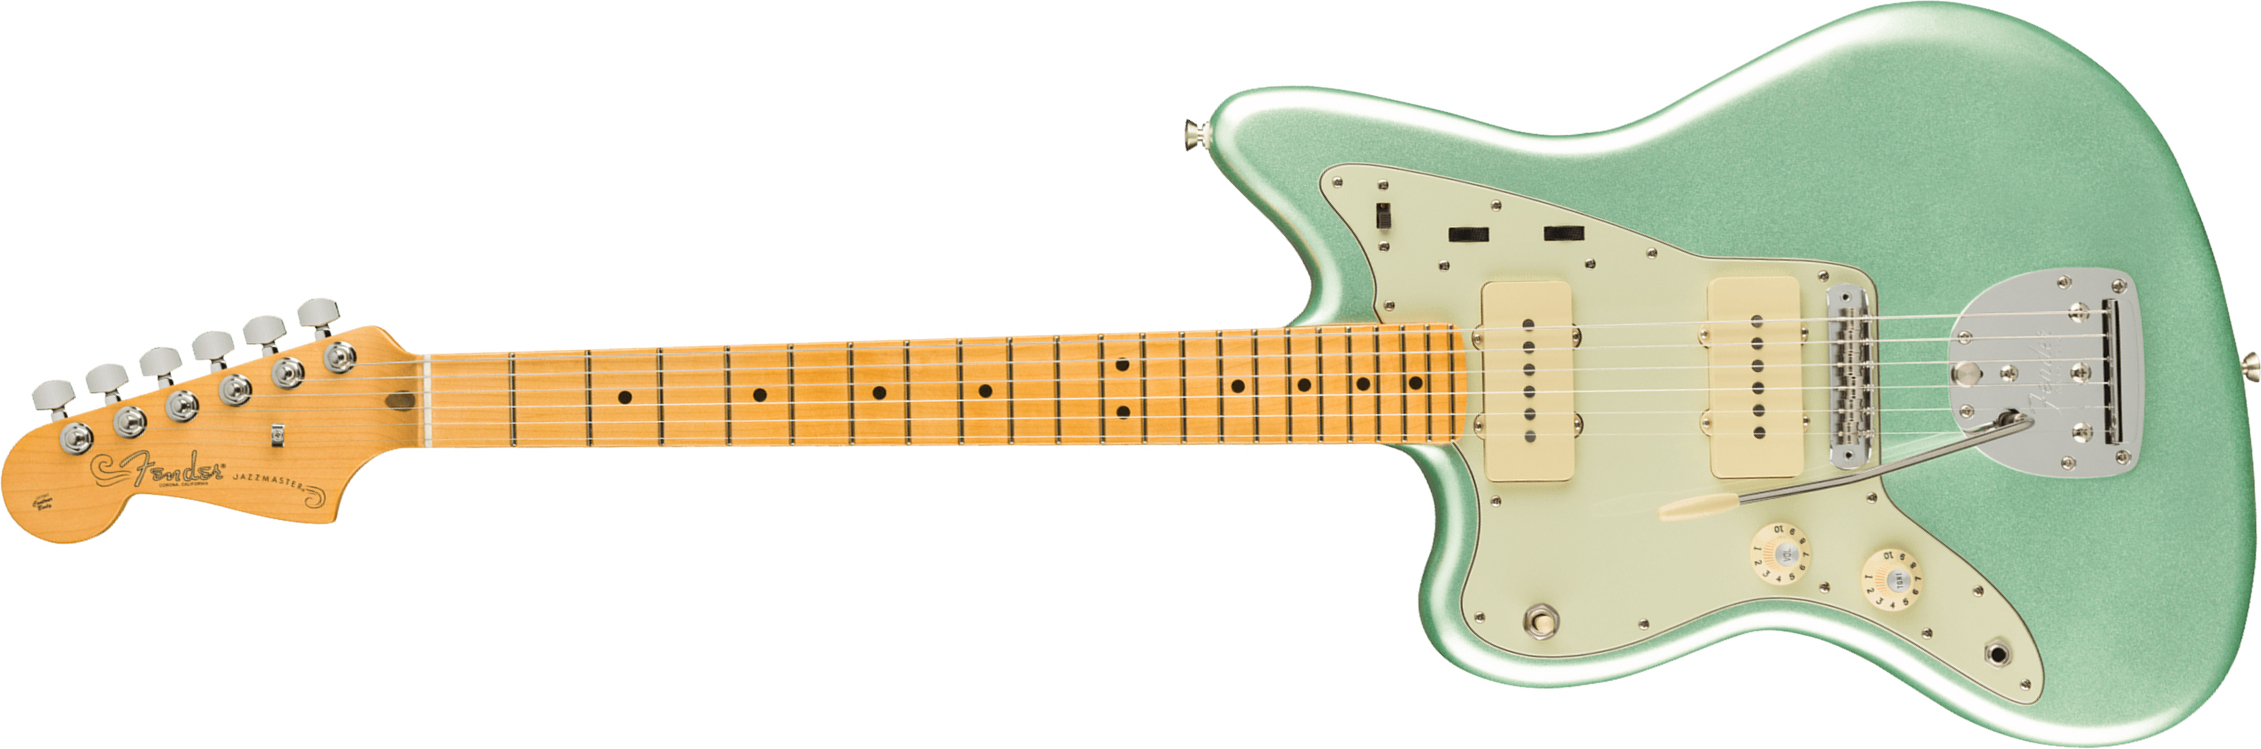 Fender Jazzmaster American Professional Ii Lh Gaucher Usa Mn - Mystic Surf Green - E-Gitarre für Linkshänder - Main picture